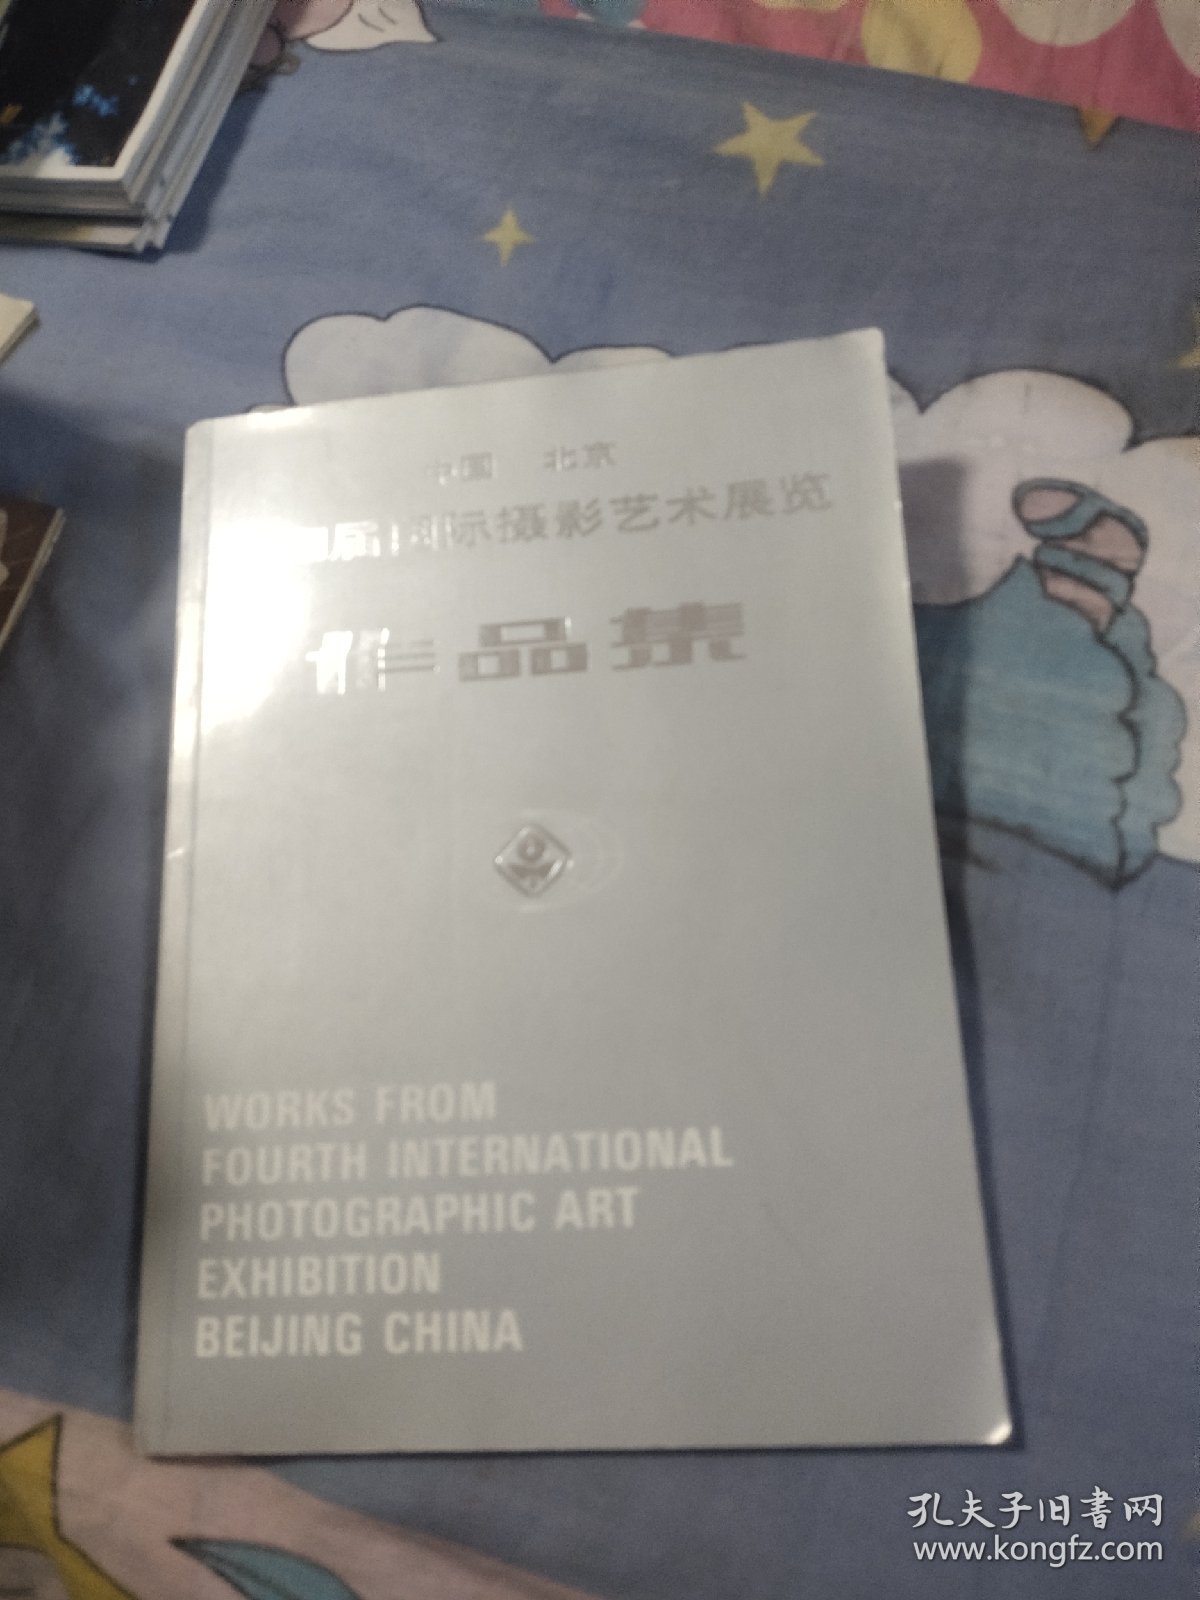 中国北京第四届国际摄影艺术展览作品集，7.88元包邮，